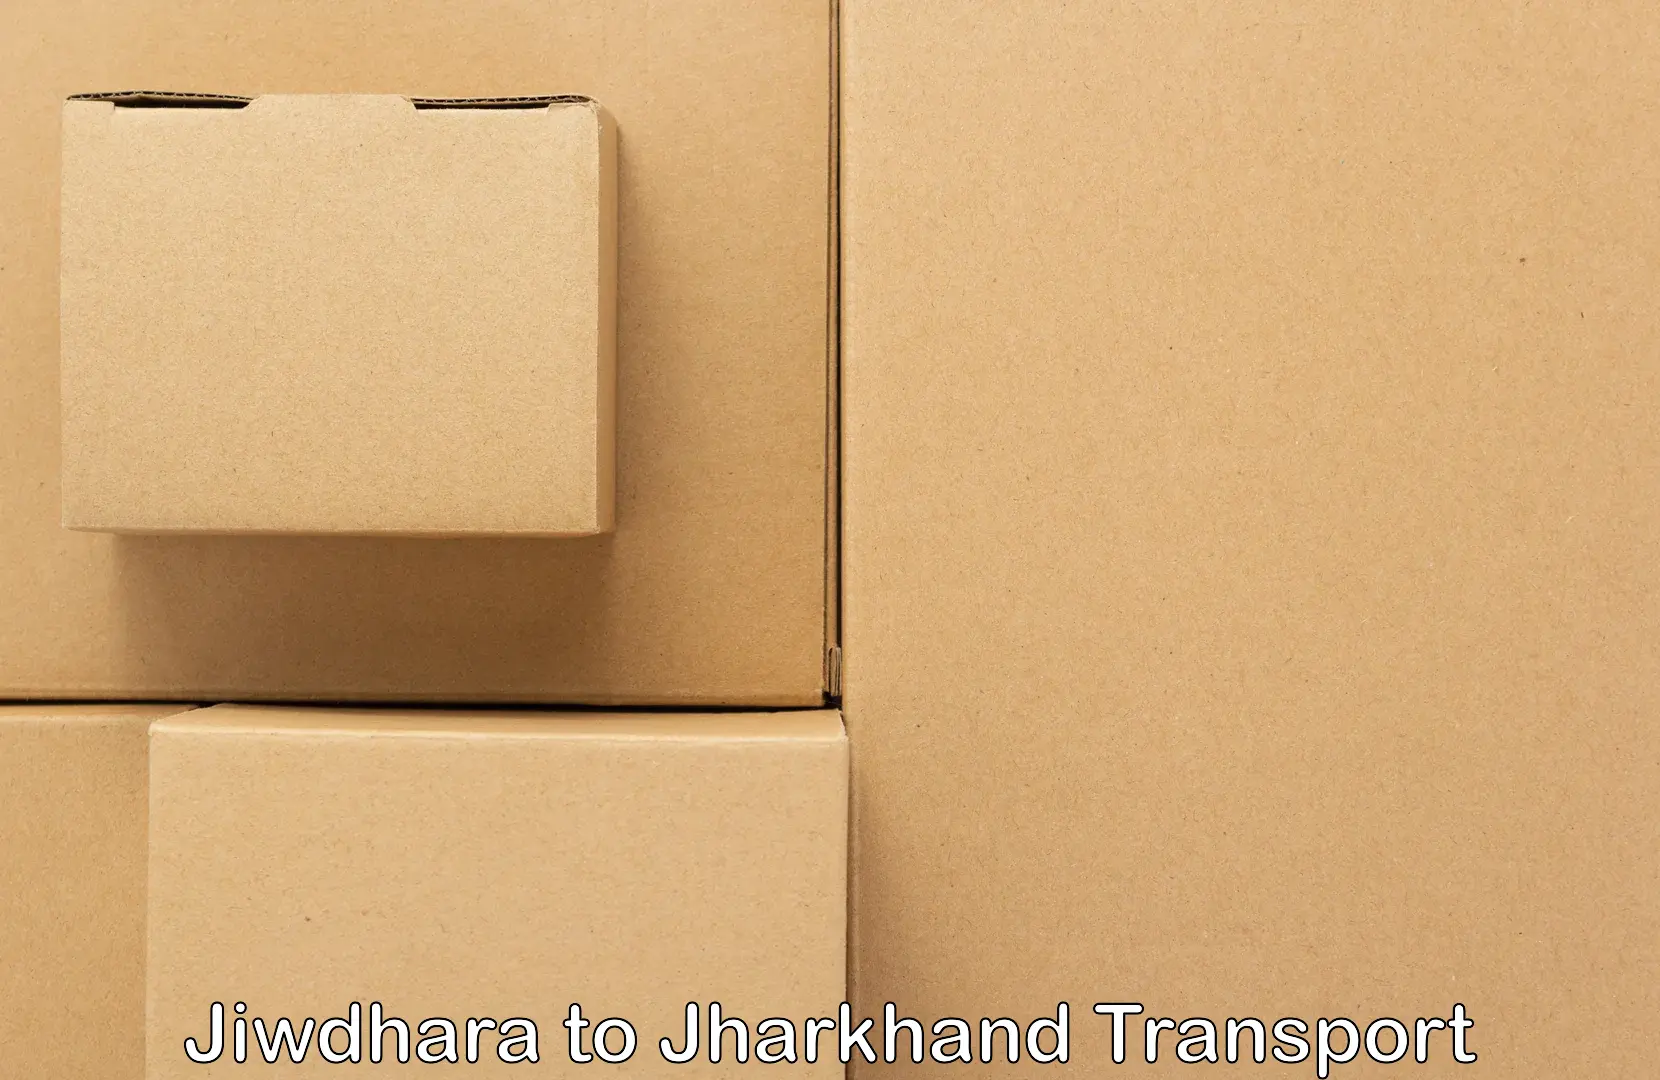 Nationwide transport services Jiwdhara to Jamtara